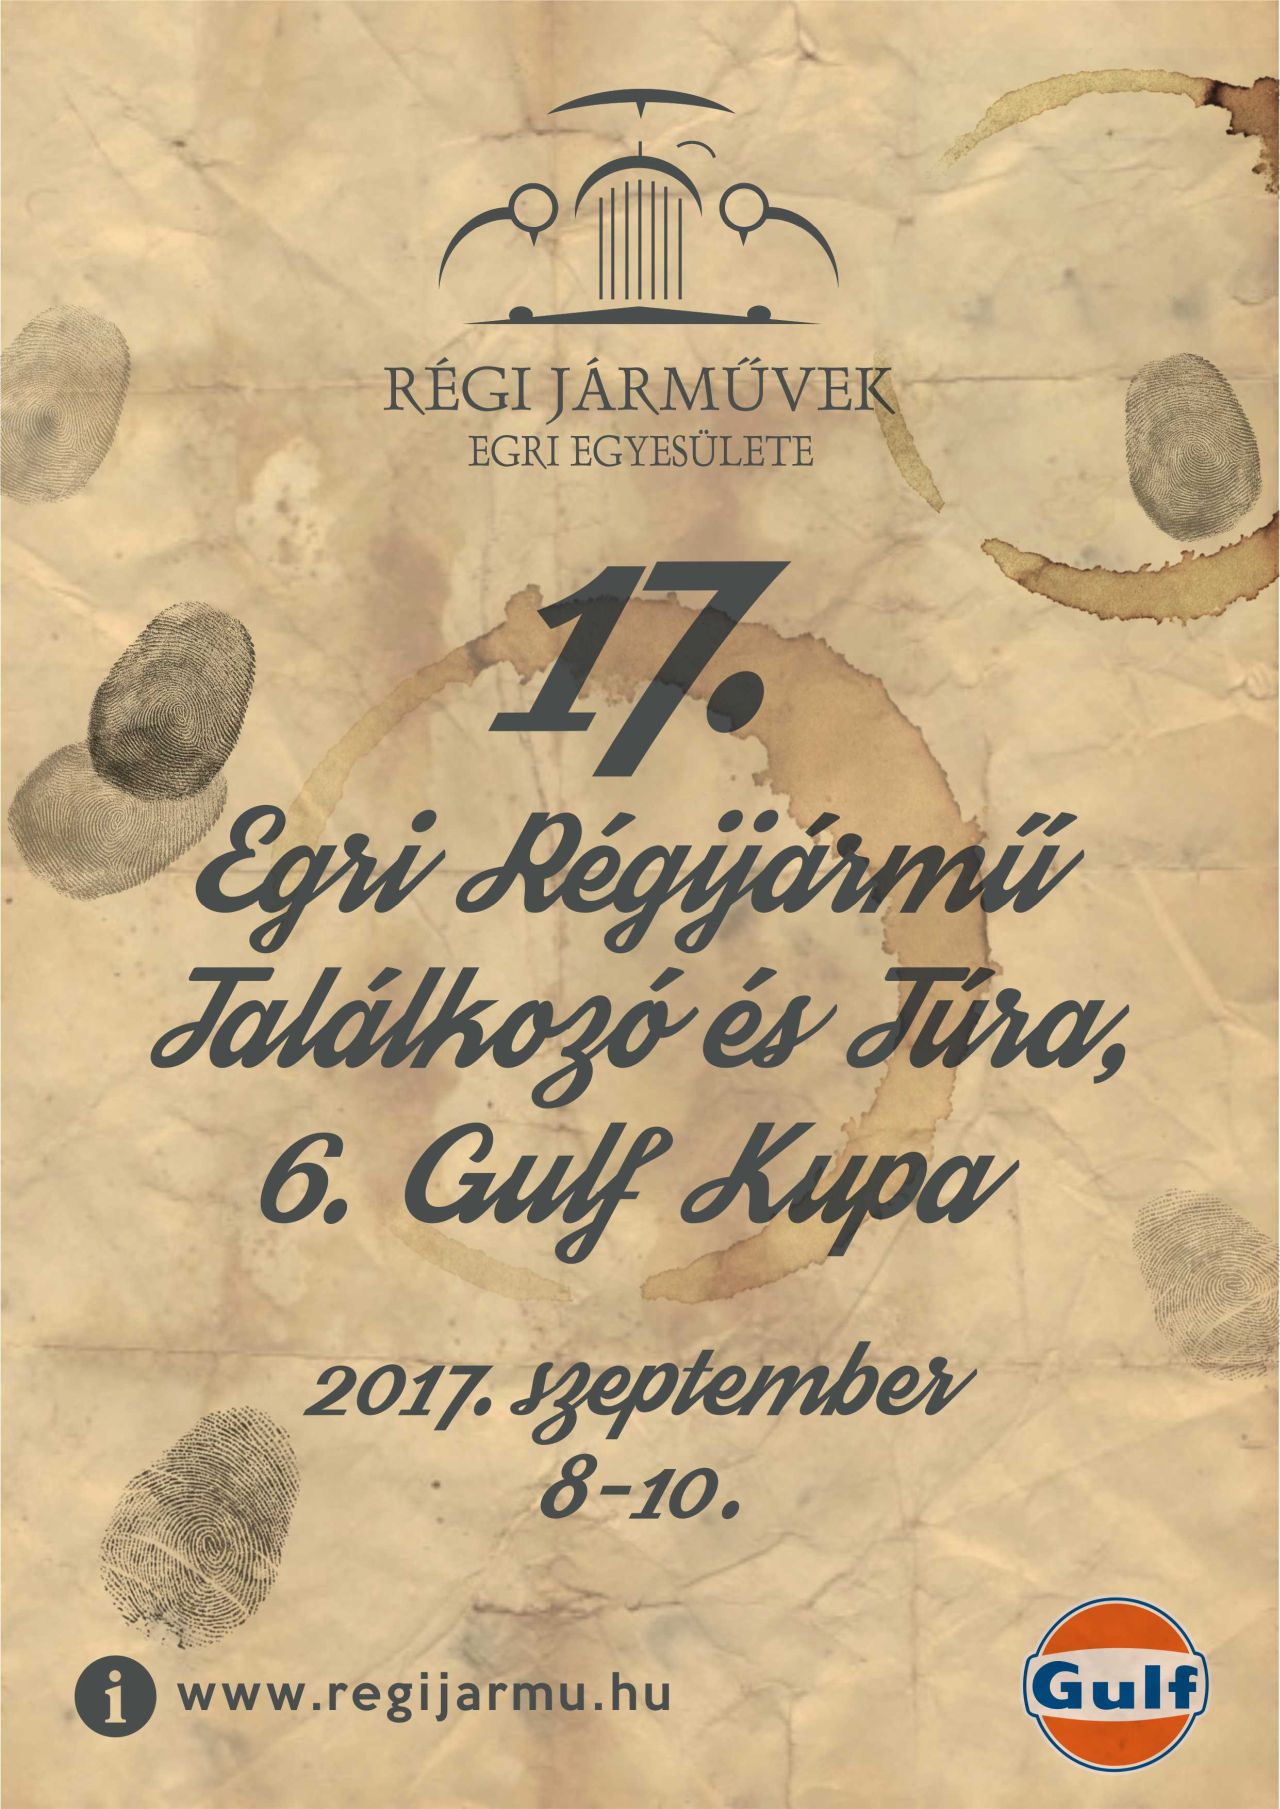 2017 XVII. EGRI RÉGI JÁRMŰ TALÁLKOZÓ ÉS TÚRA, VI. GULF KUPA plakát